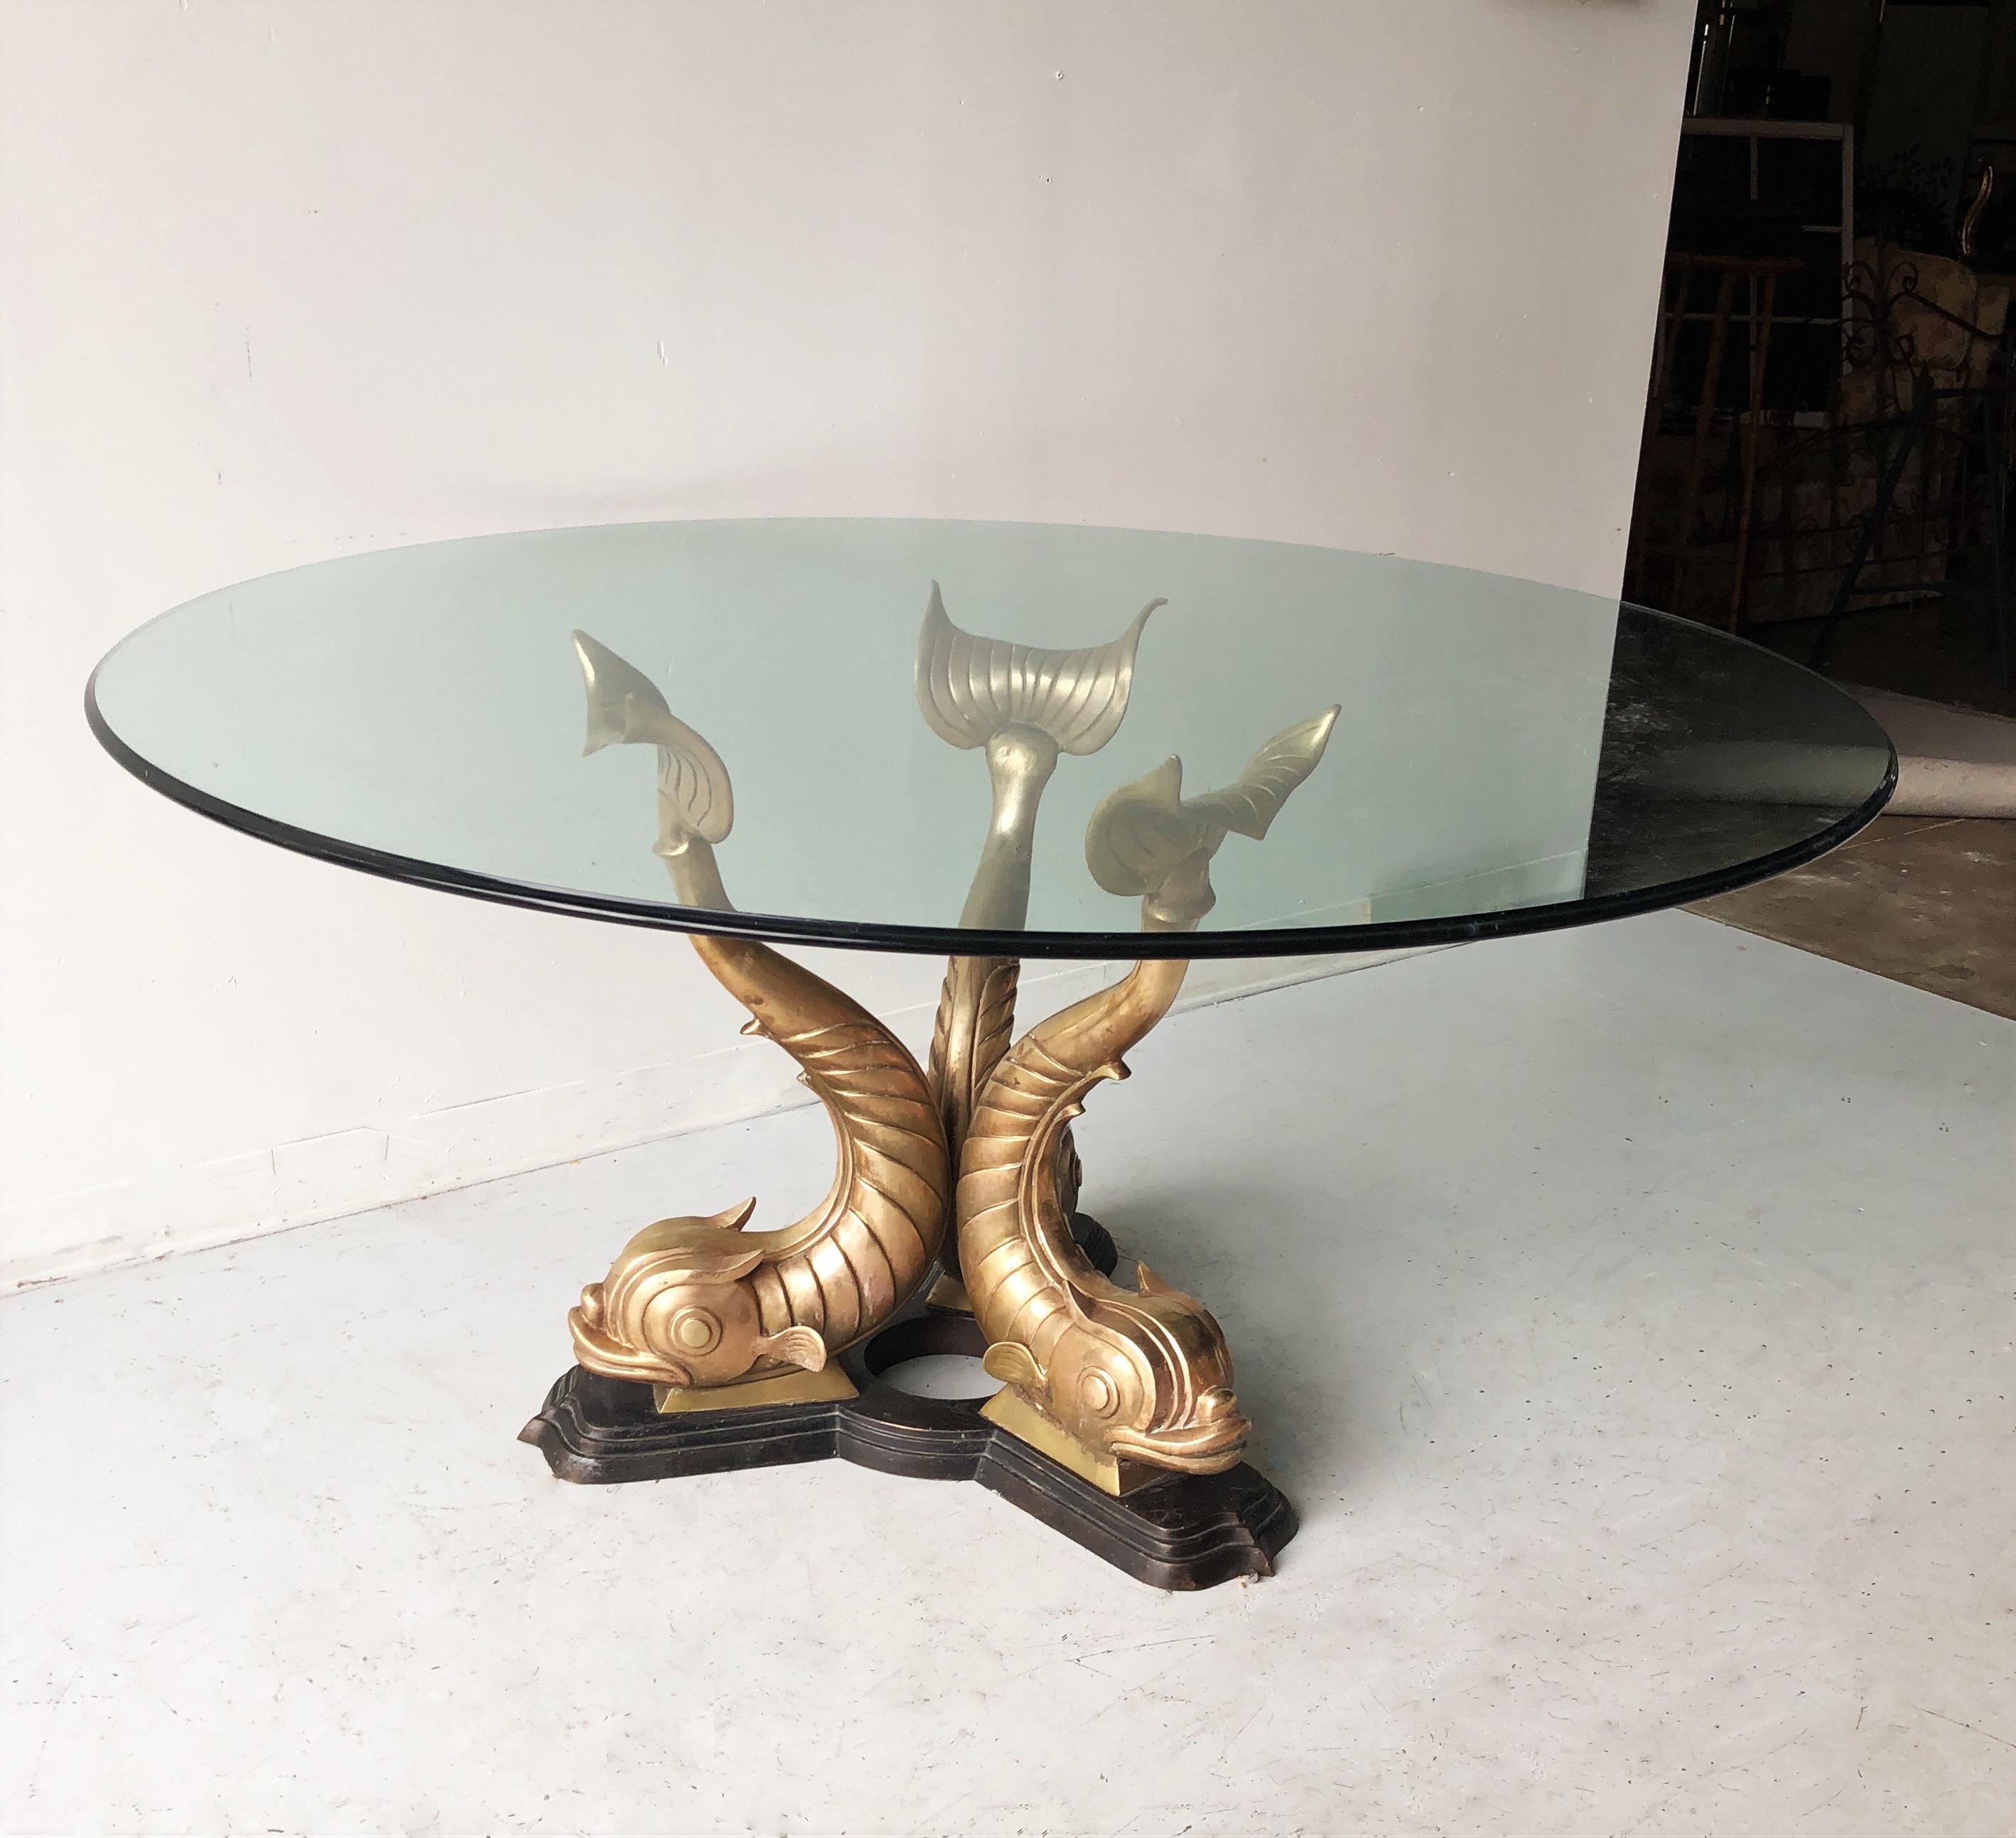 Incroyable table à manger en forme de poisson koï. La base de la table représente trois poissons Koi sculptés en laiton reposant sur une base en bronze. Fabriqué en Italie. Base extrêmement lourde et solide qui peut supporter un très gros morceau de